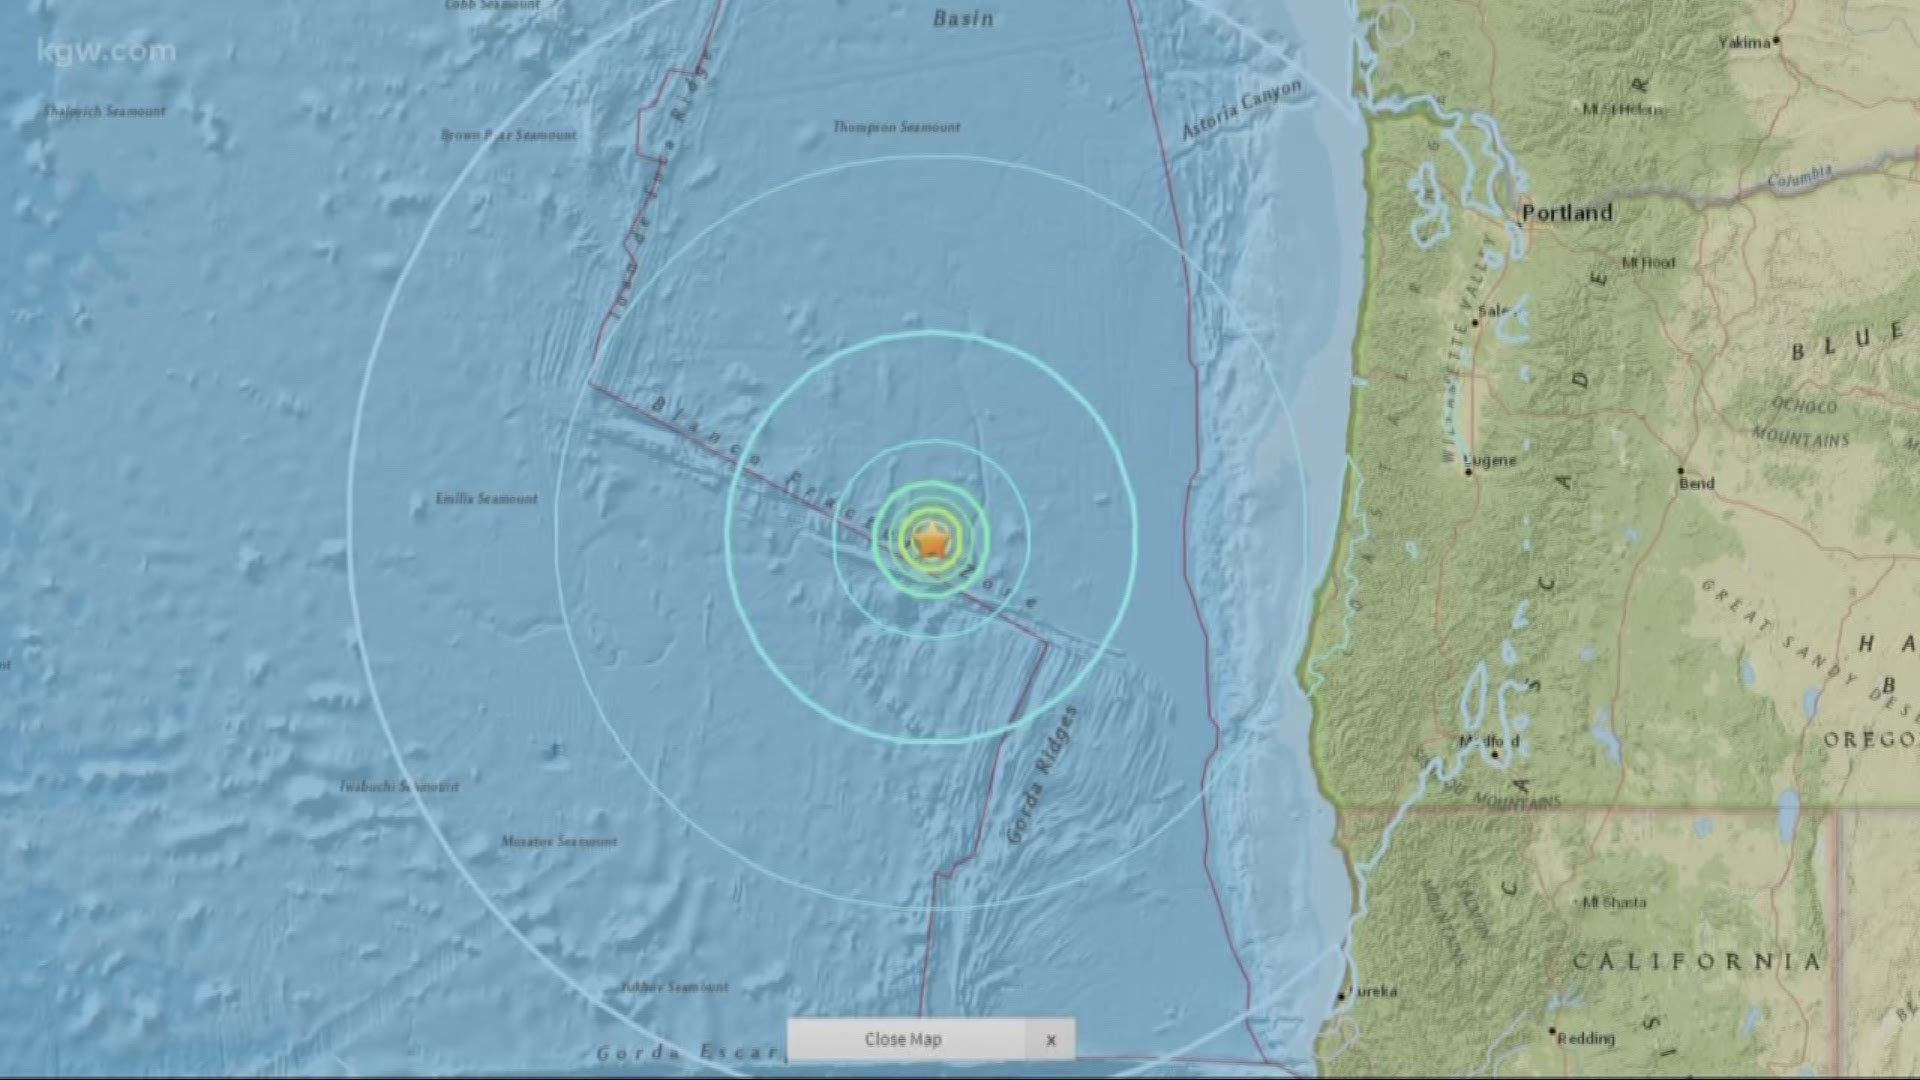 6.2 earthquake strikes off Southern Oregon coast